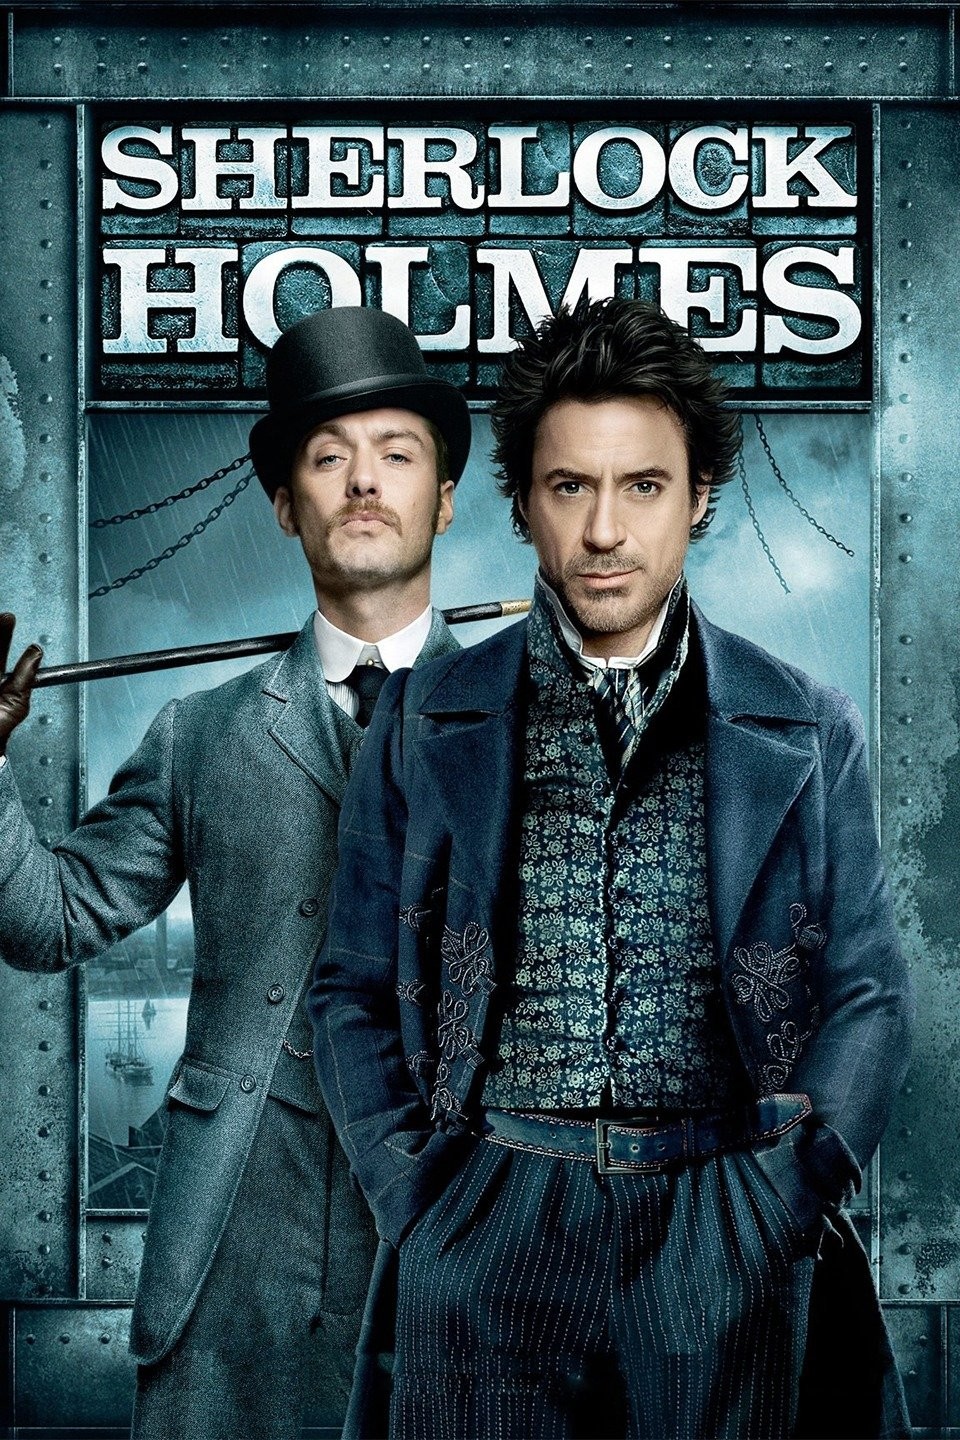 Sherlock (TV Series 2010–2017) - IMDb